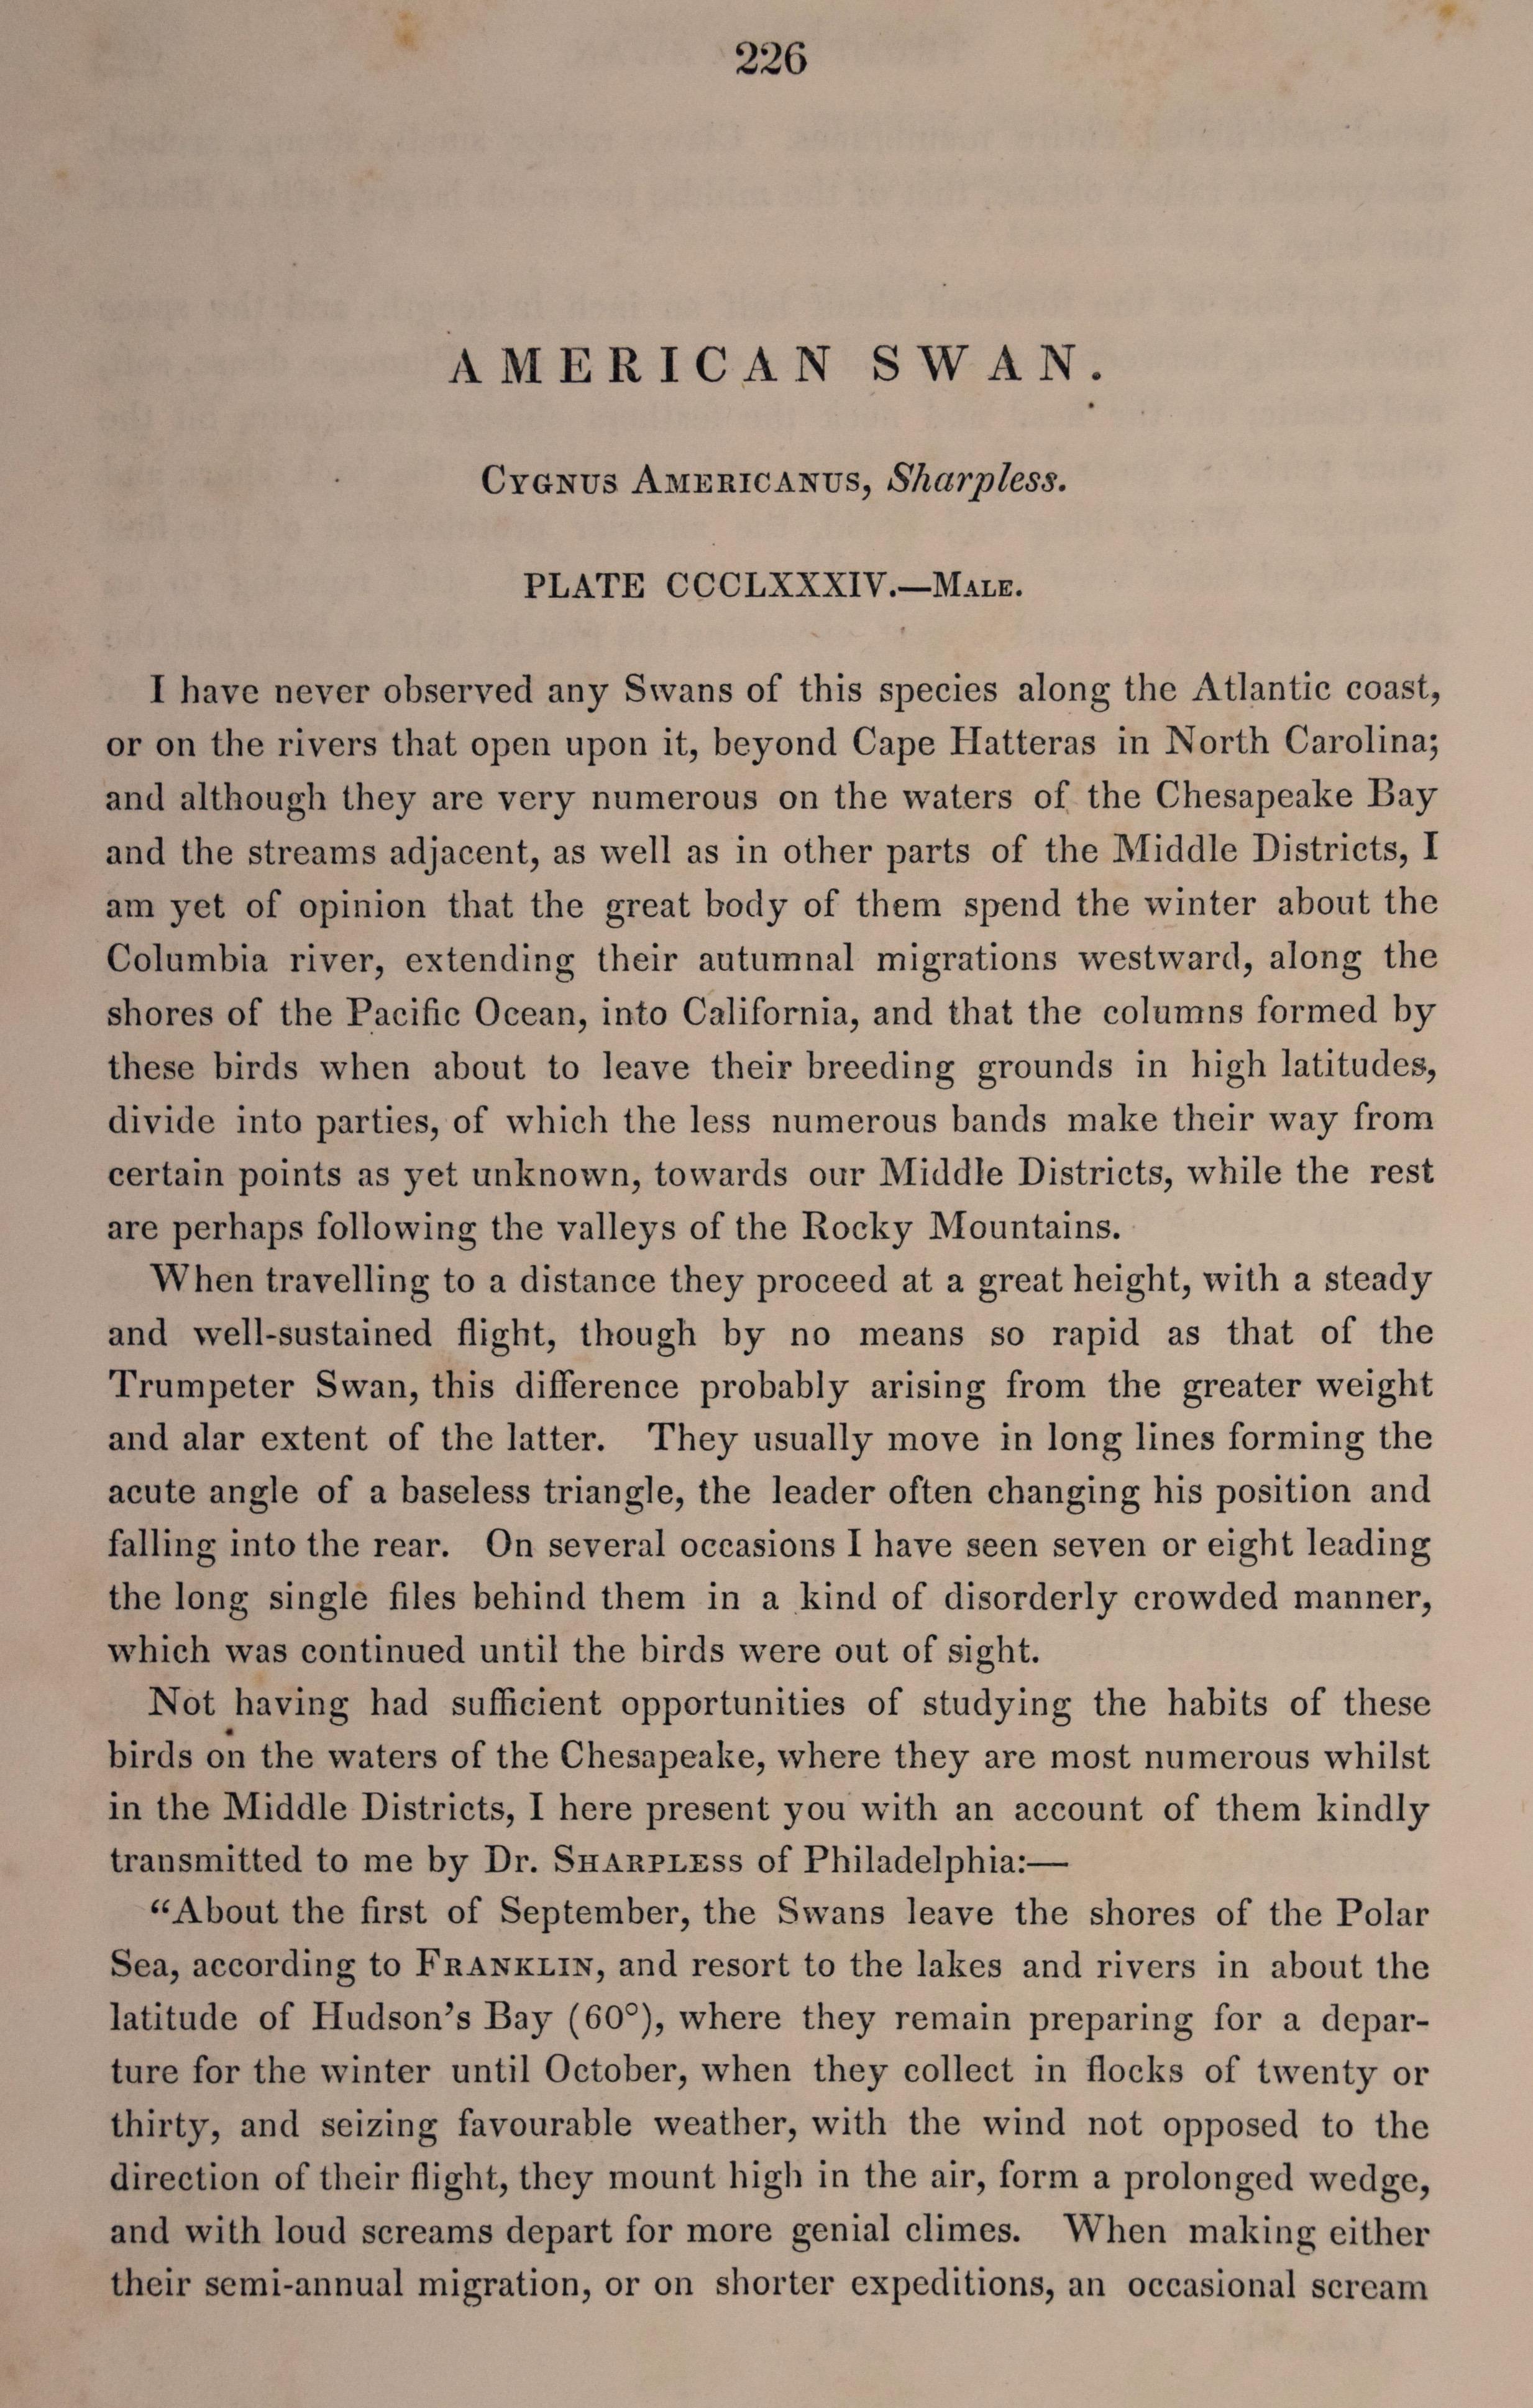 Dies ist ein Original selten und extrem Sammler 1. königlichen Oktav-Ausgabe John James Audubon handkolorierte königlichen Oktav-Lithographie mit dem Titel 